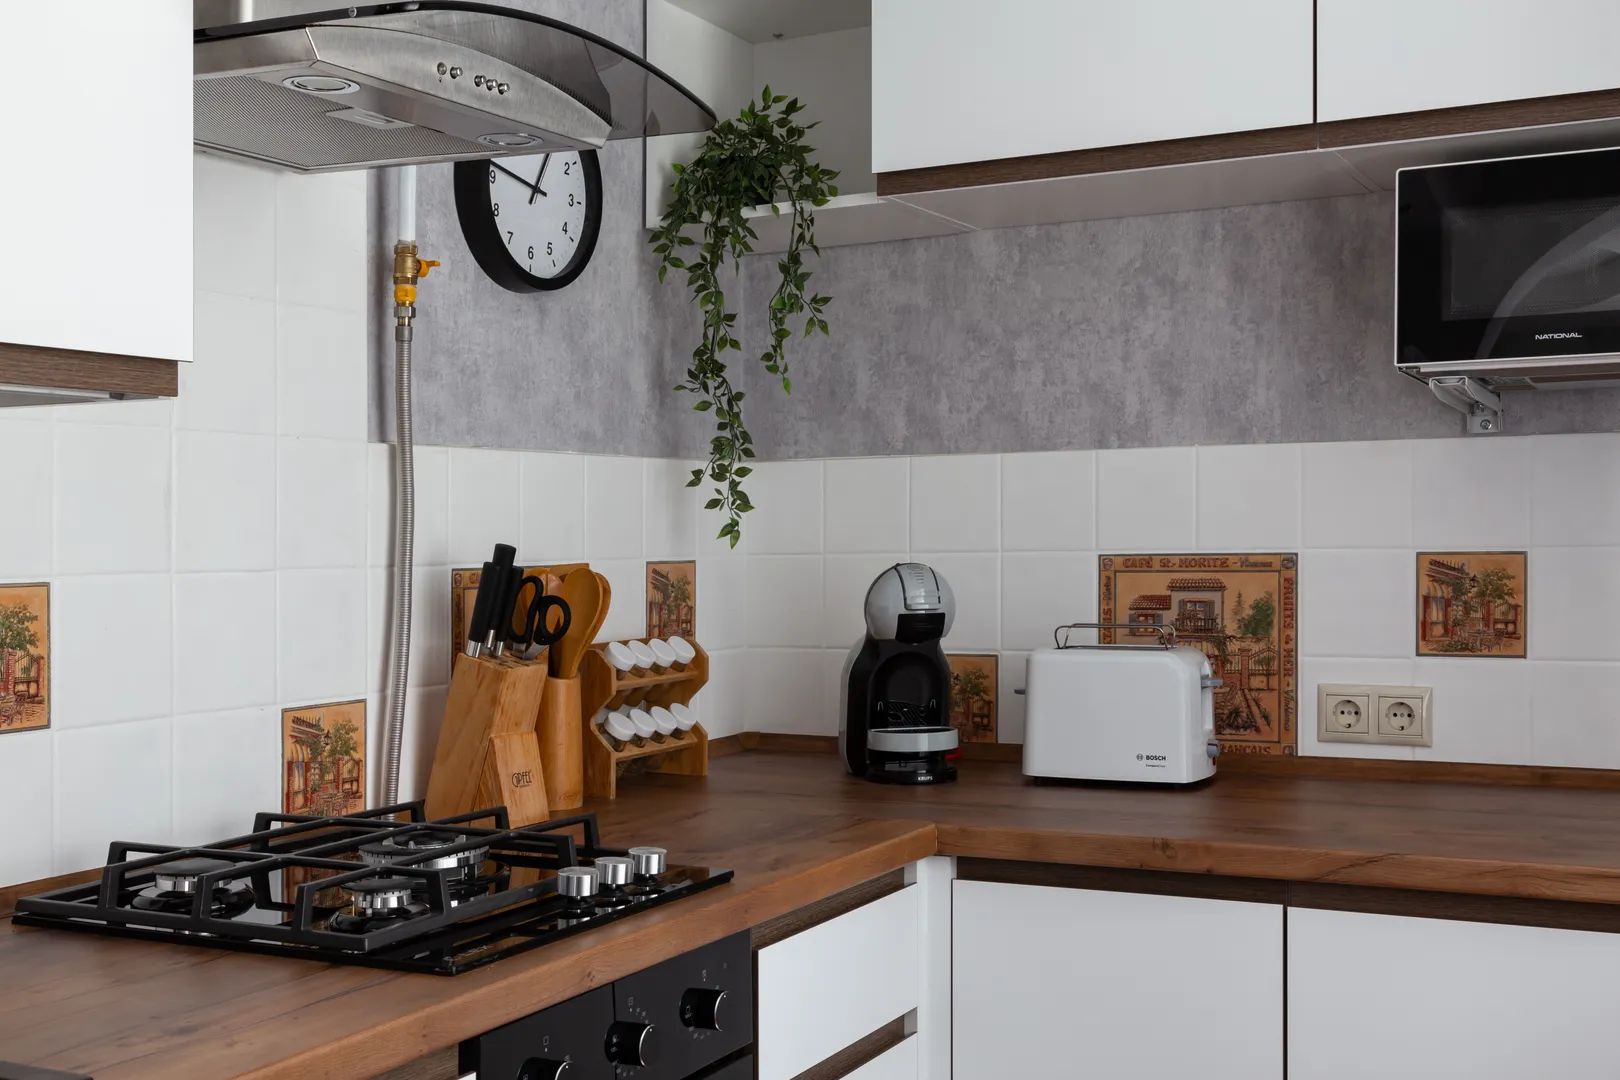 Оборудованная кухня: газовая плита и духовой шкаф, кофемашина с бесплатными капсулами, тостер и микроволновая печь